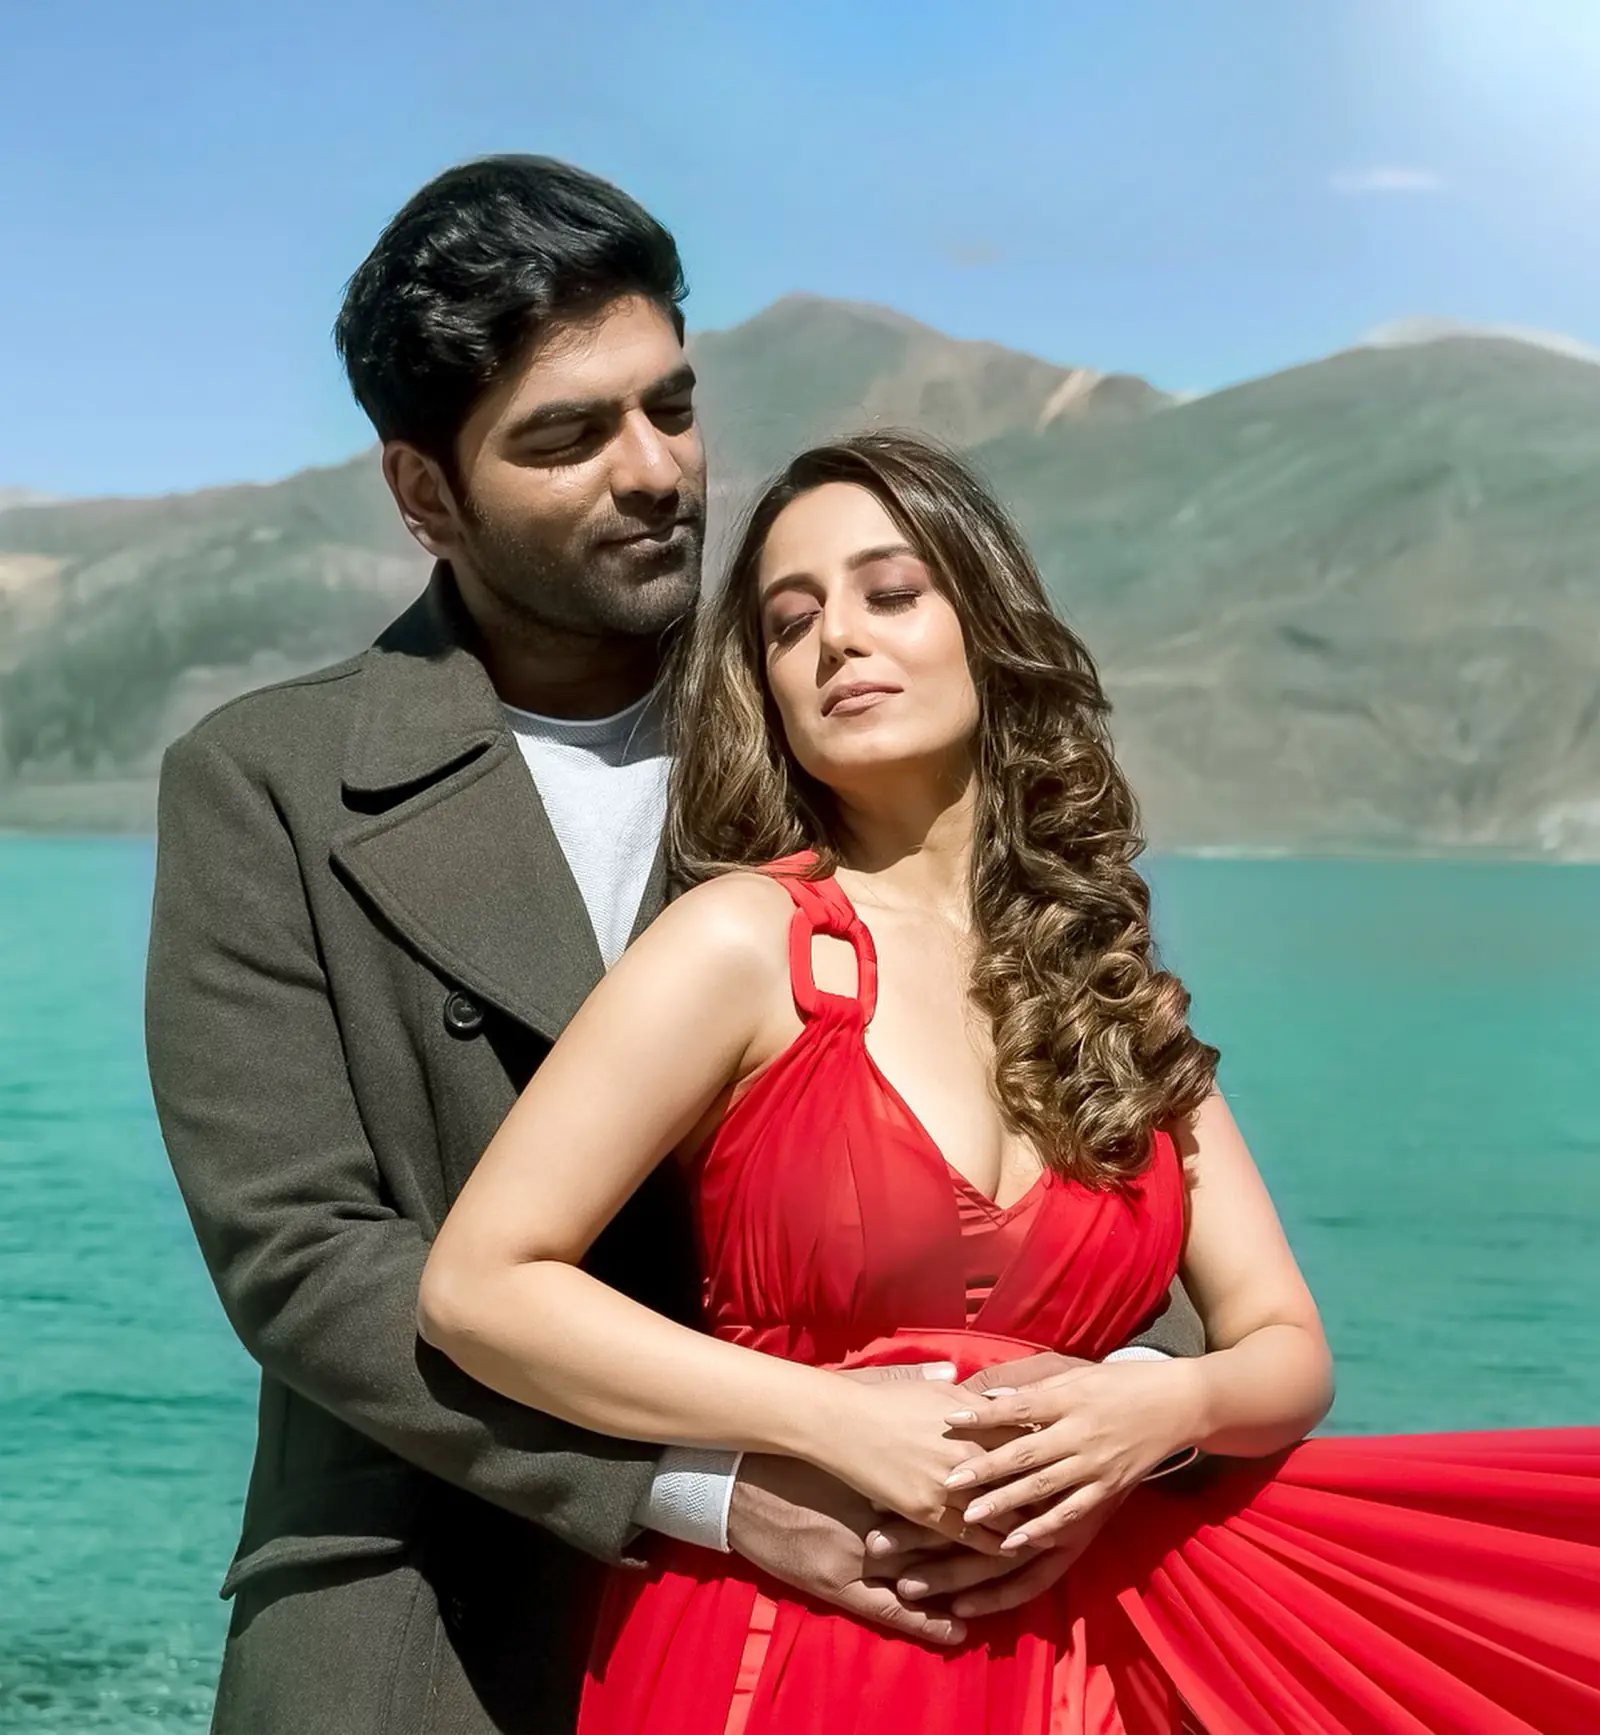 शाहरुख खान के गीत 'गेरुआ' की याद दिलाता है शौर्य मेहता और सृष्टि रोड़े का म्यूजिक वीडियो 'दिल ये दिलबरो'